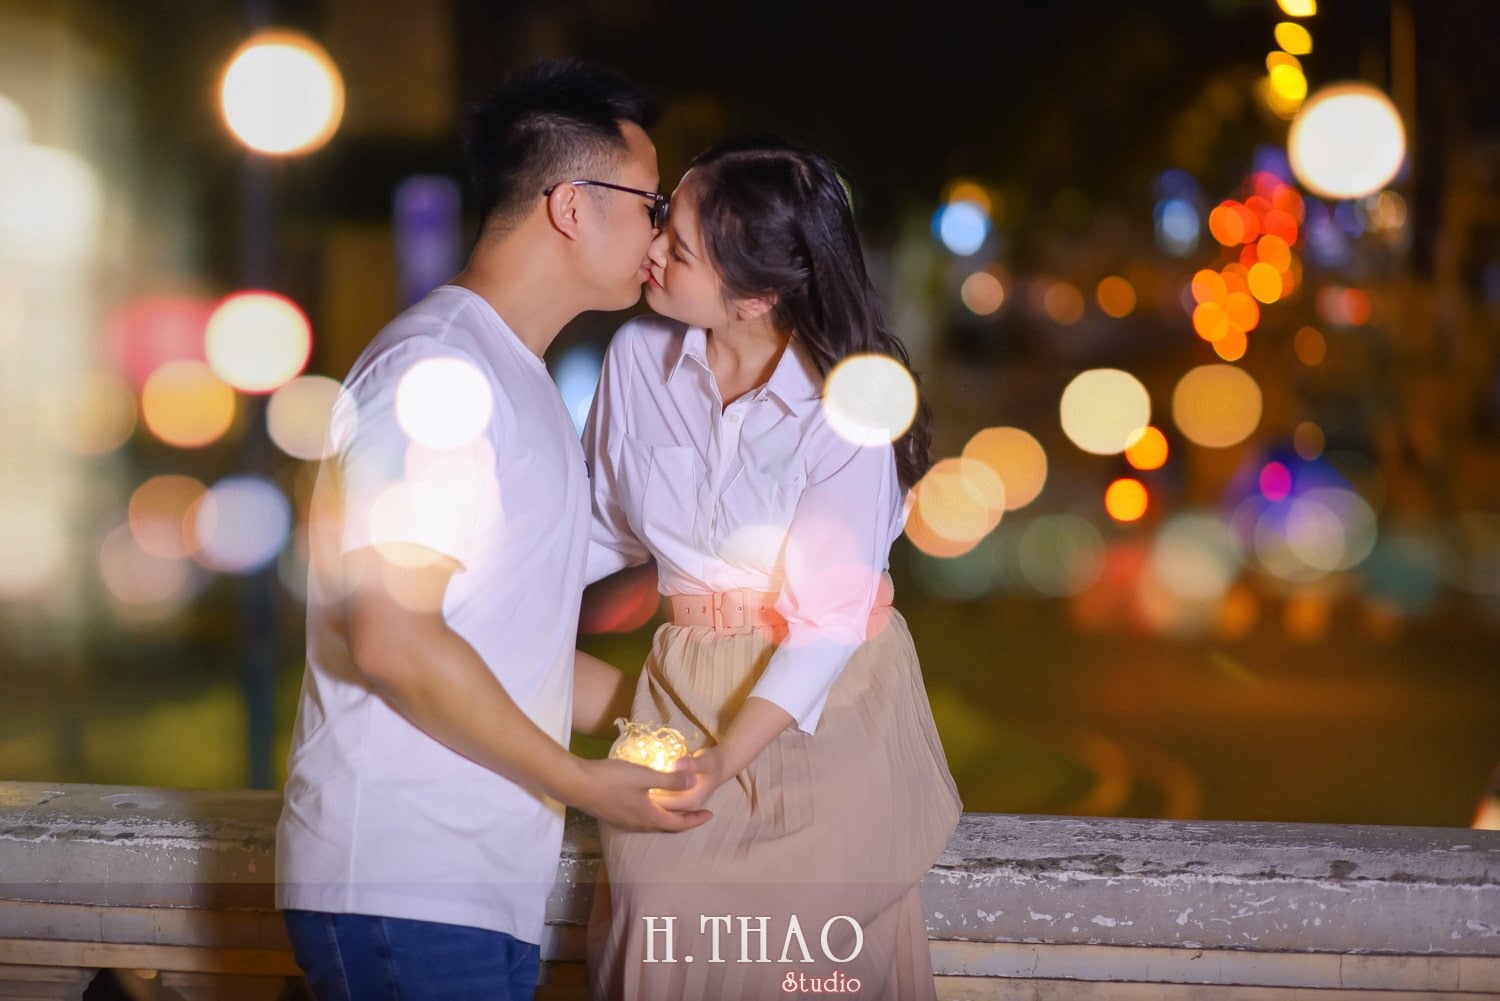 Anh chup couple ban dem 8 min 1 - Tổng hợp 50 cách tạo dáng cực đẹp khi chụp ảnh couple - HThao Studio